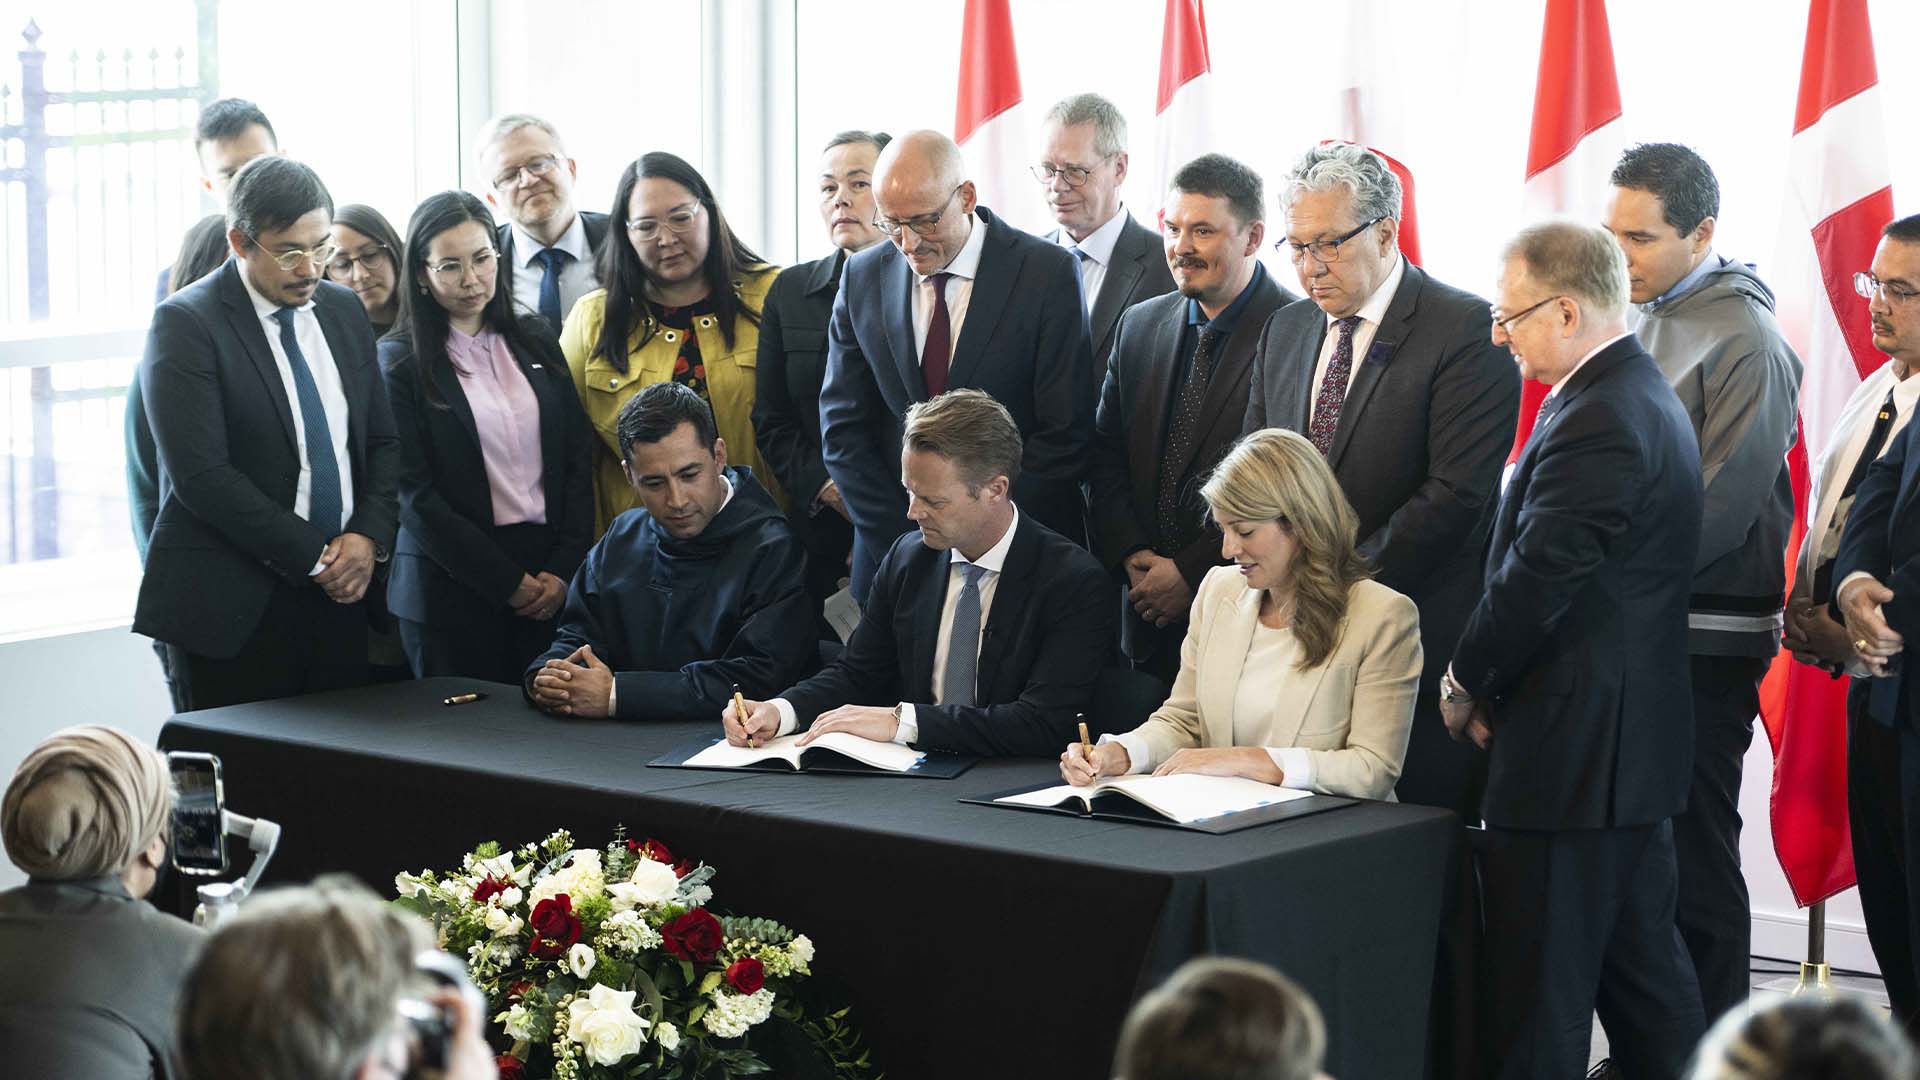 Mme Joly et le ministre danois des Affaires étrangères, Jeppe Kofod, ont signé mardi un accord pour diviser l'île de Hans, un rocher inhabité situé entre l'île d'Ellesmere, au Nunavut, et le Groenland, un territoire danois autonome.